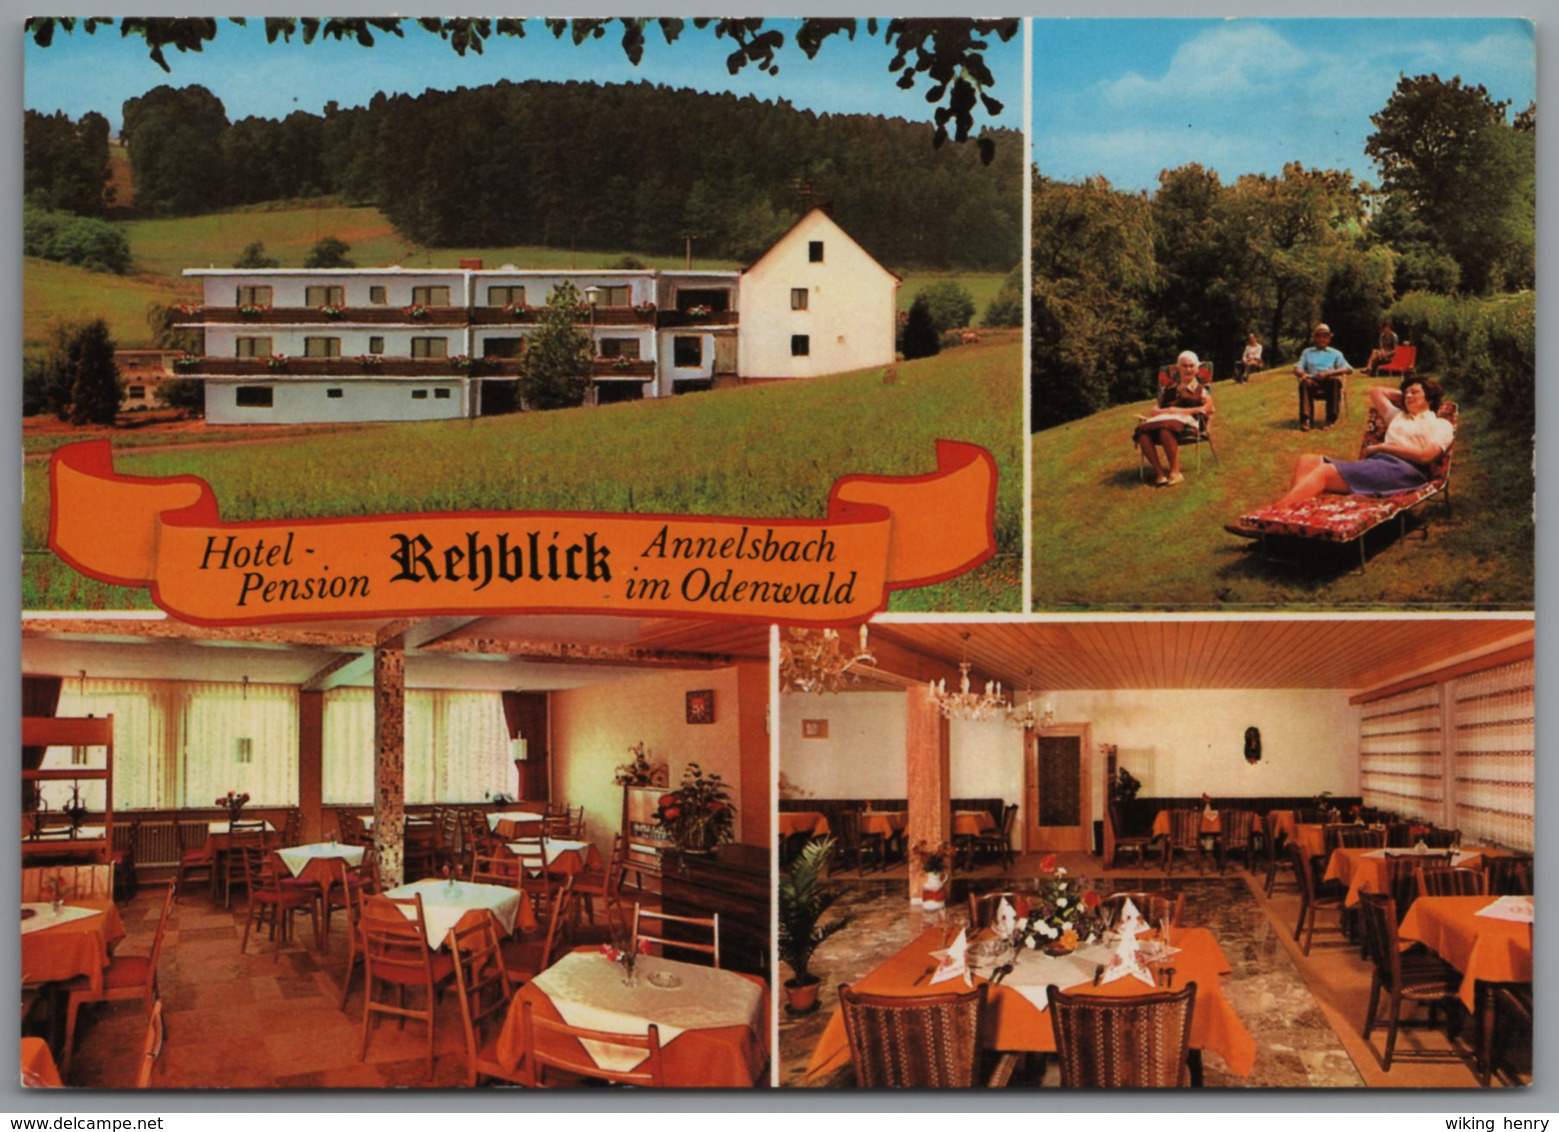 Höchst Im Odenwald Annelsbach - Hotel Pension Rehblick - Hoechst